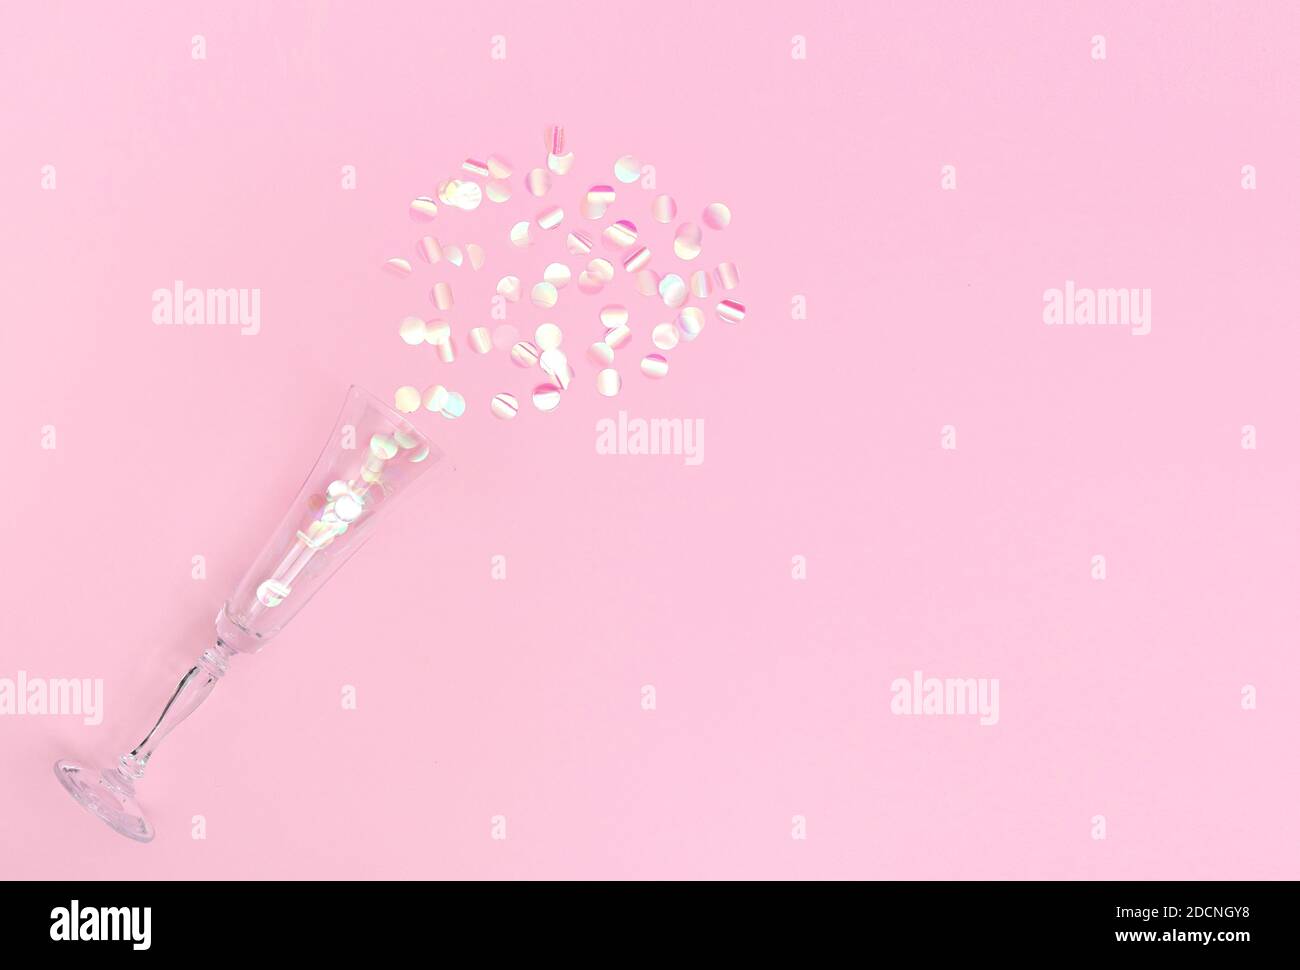 Сhampagne flûte remplie de confetti rosés sur fond rose. Espace de copie, plan de travail Banque D'Images